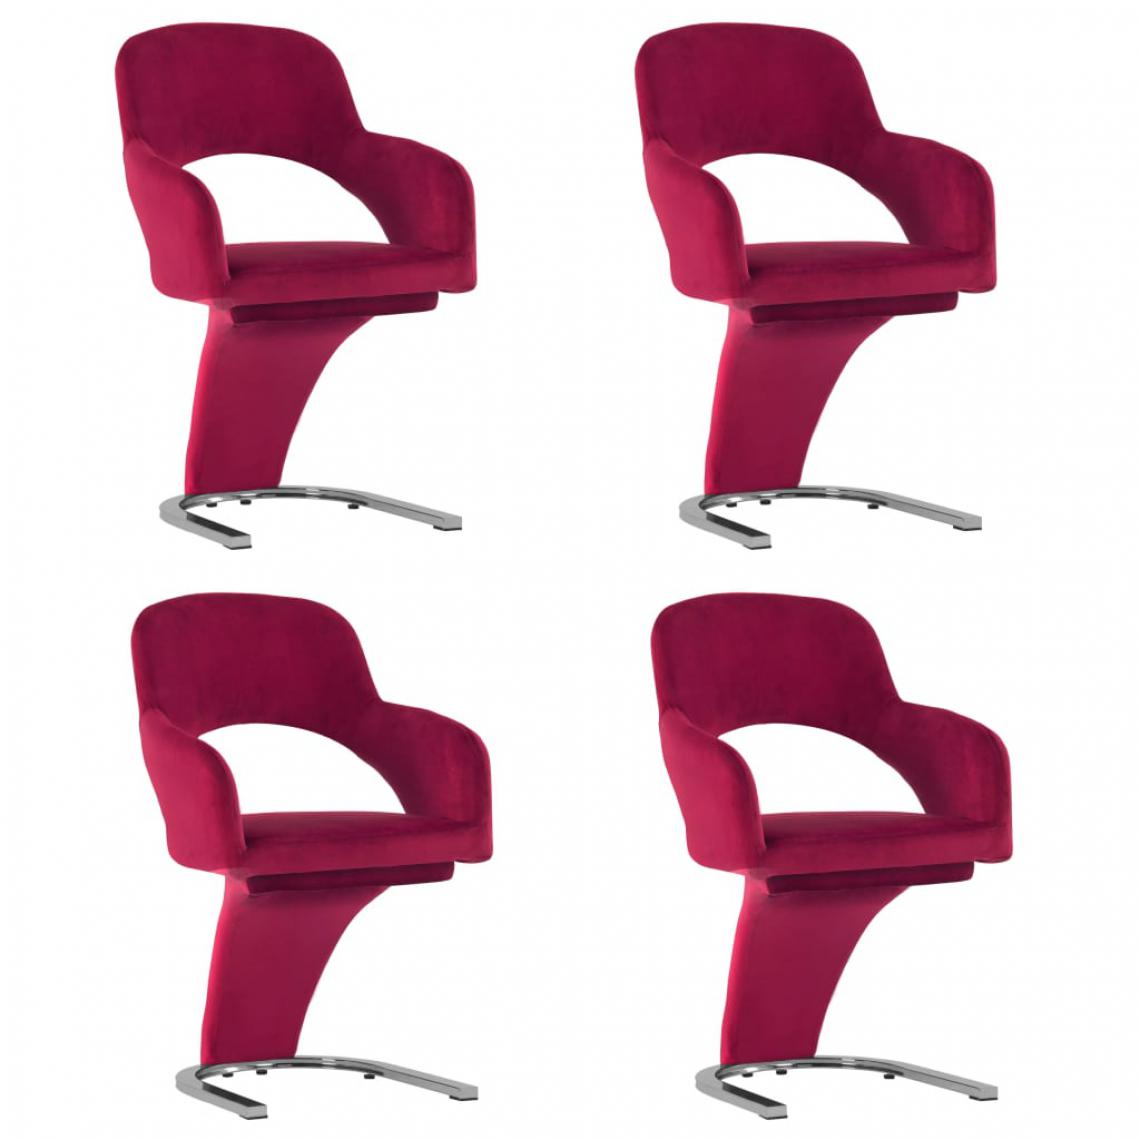 Icaverne - Contemporain Fauteuils et chaises edition Port-d’Espagne Chaises de salle à manger 4 pcs Rouge bordeaux Velours - Chaises